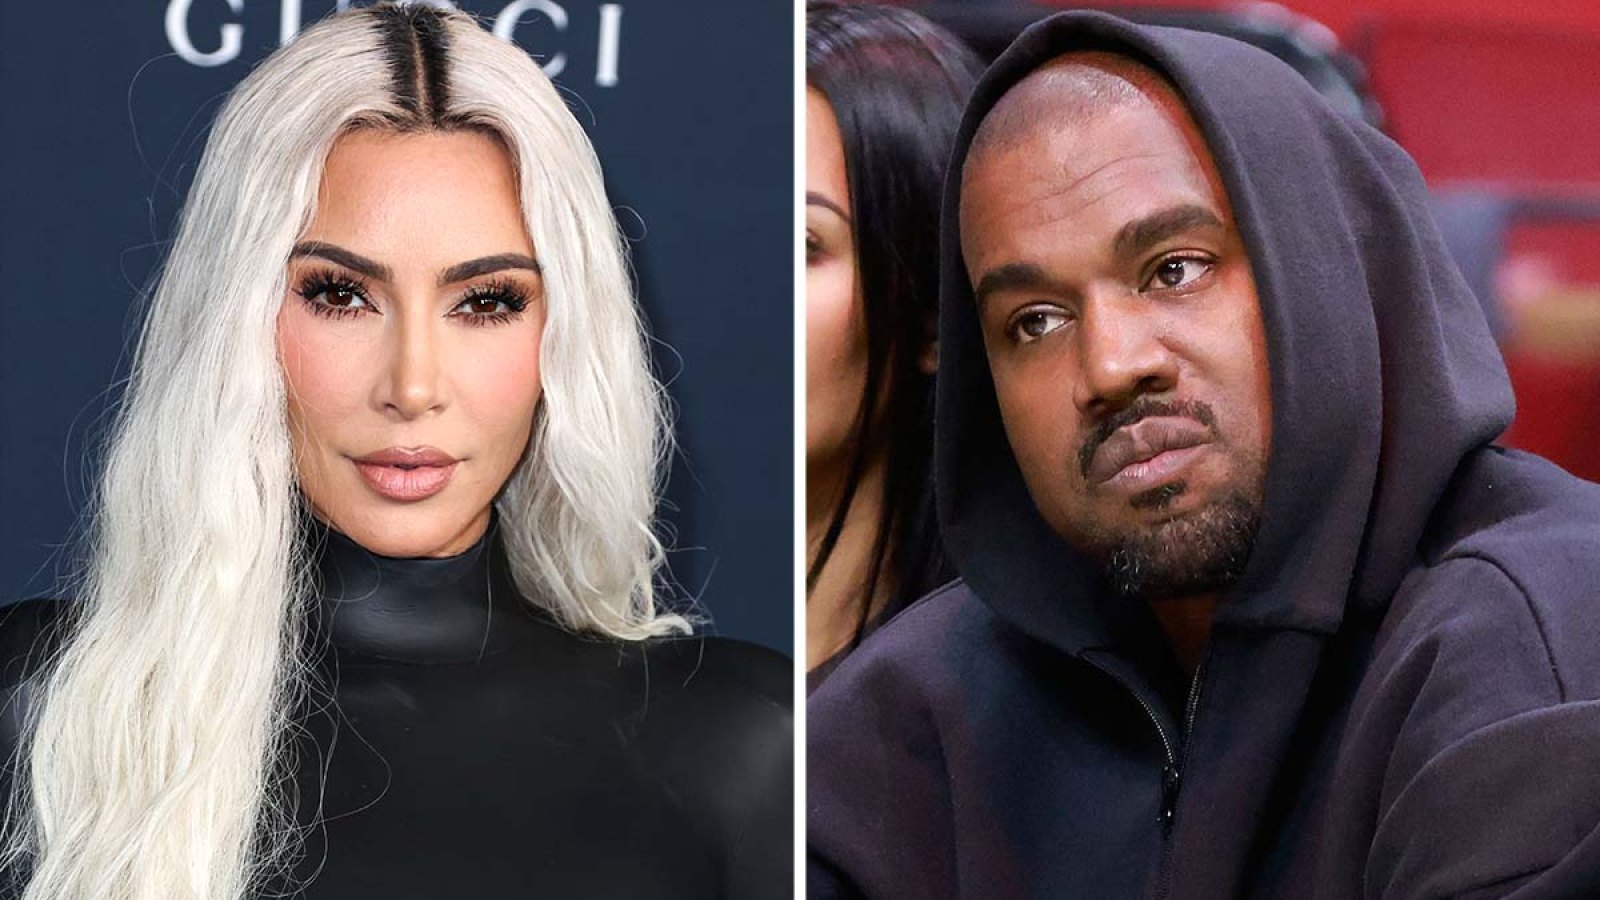 Report: Kanye West allegedly showed explicit Kim Kardashian media